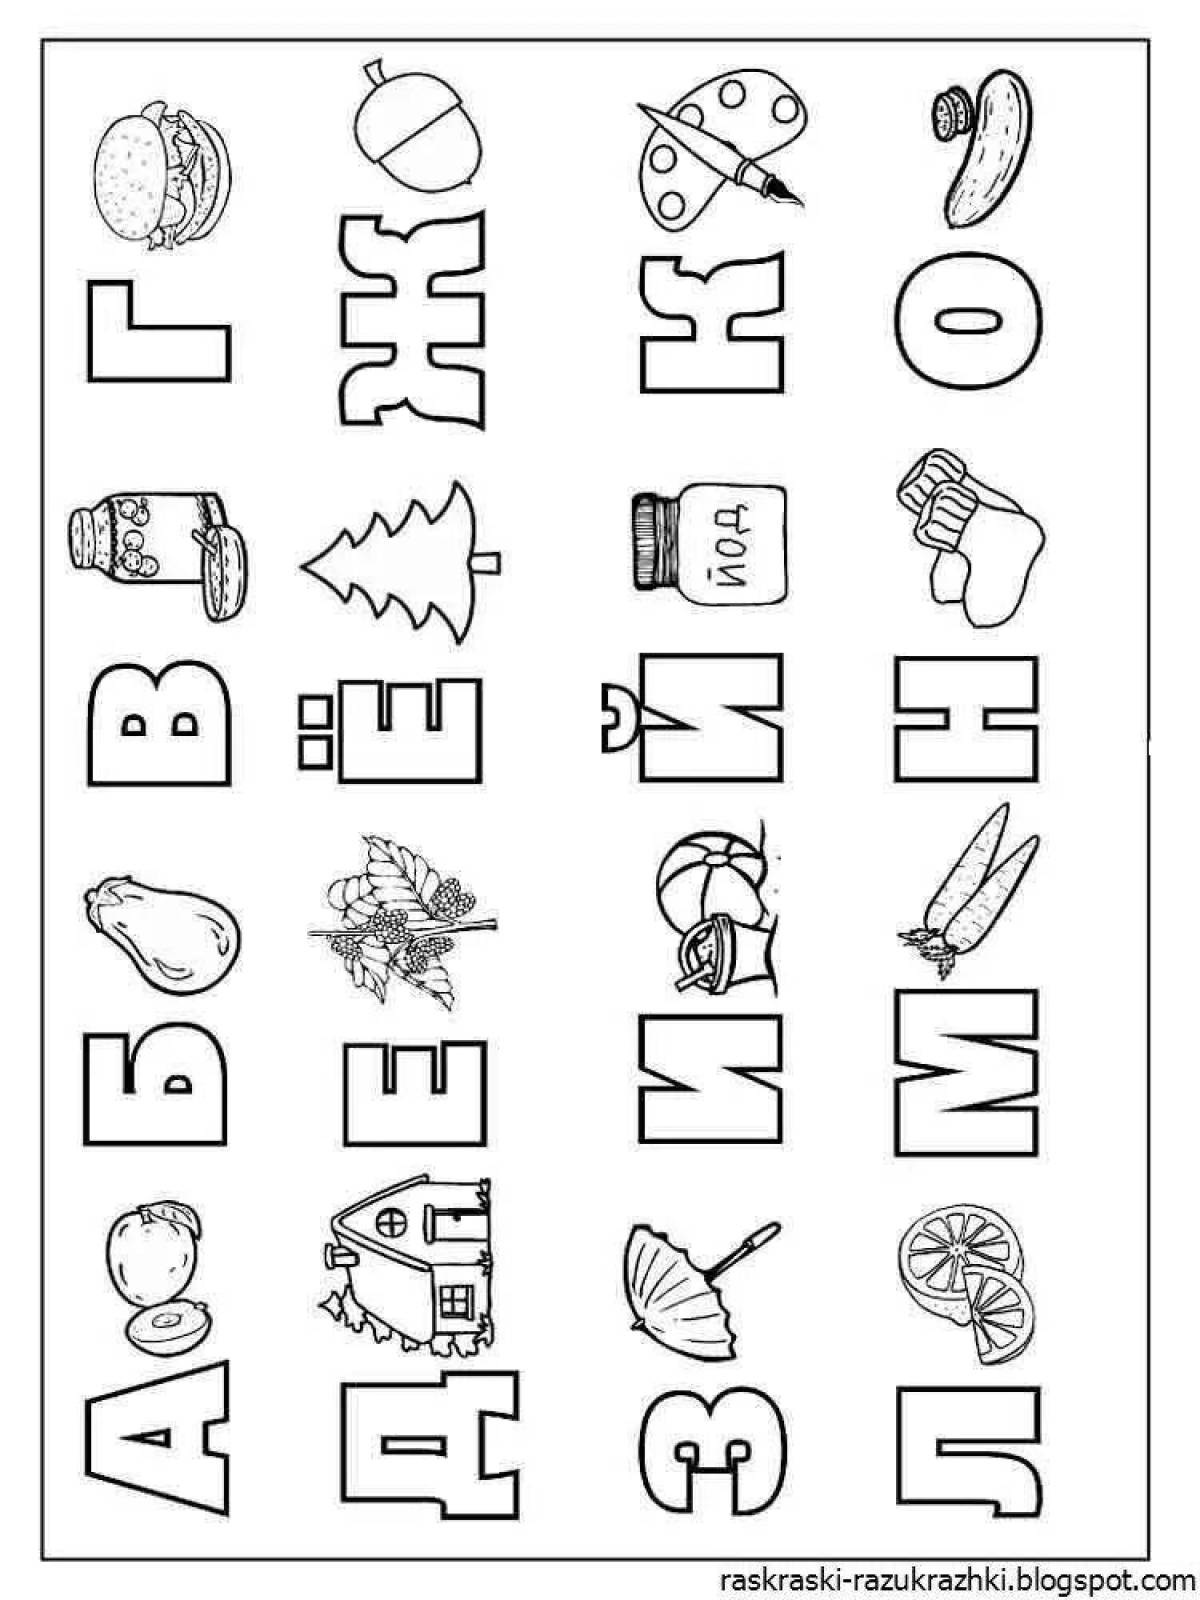 Яркая детская раскраска с алфавитом